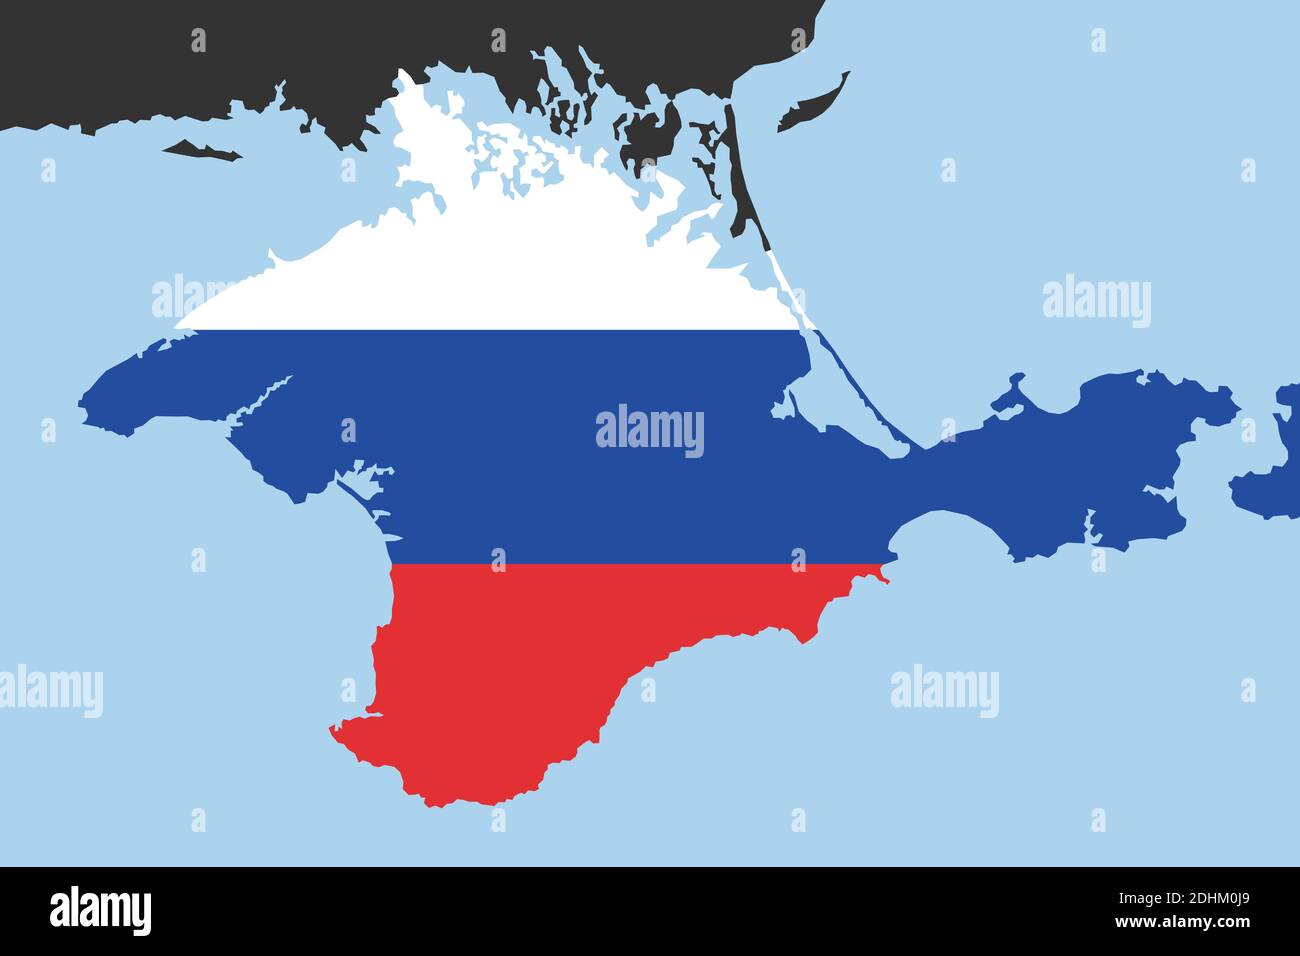 Krim als Teil Russlands - Halbinsel als russisches Territorium und Land nach Annexion und expansive Übernahme. Vektorilustration Stockfoto